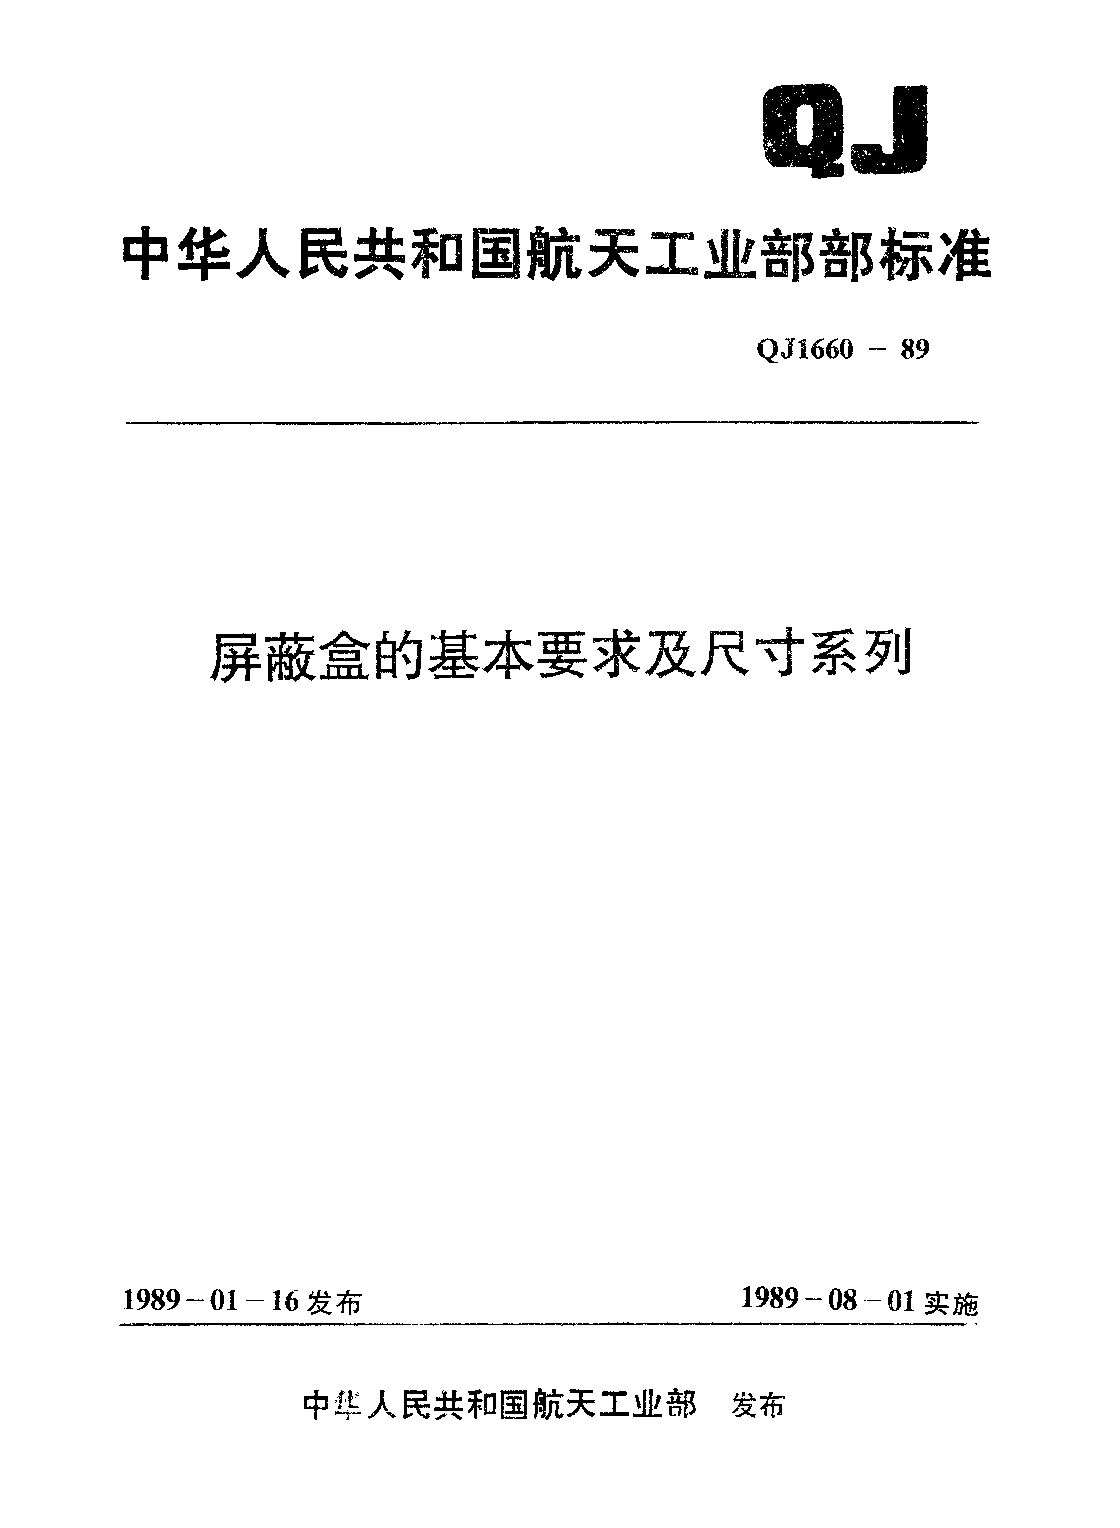 QJ 1660-1989封面图